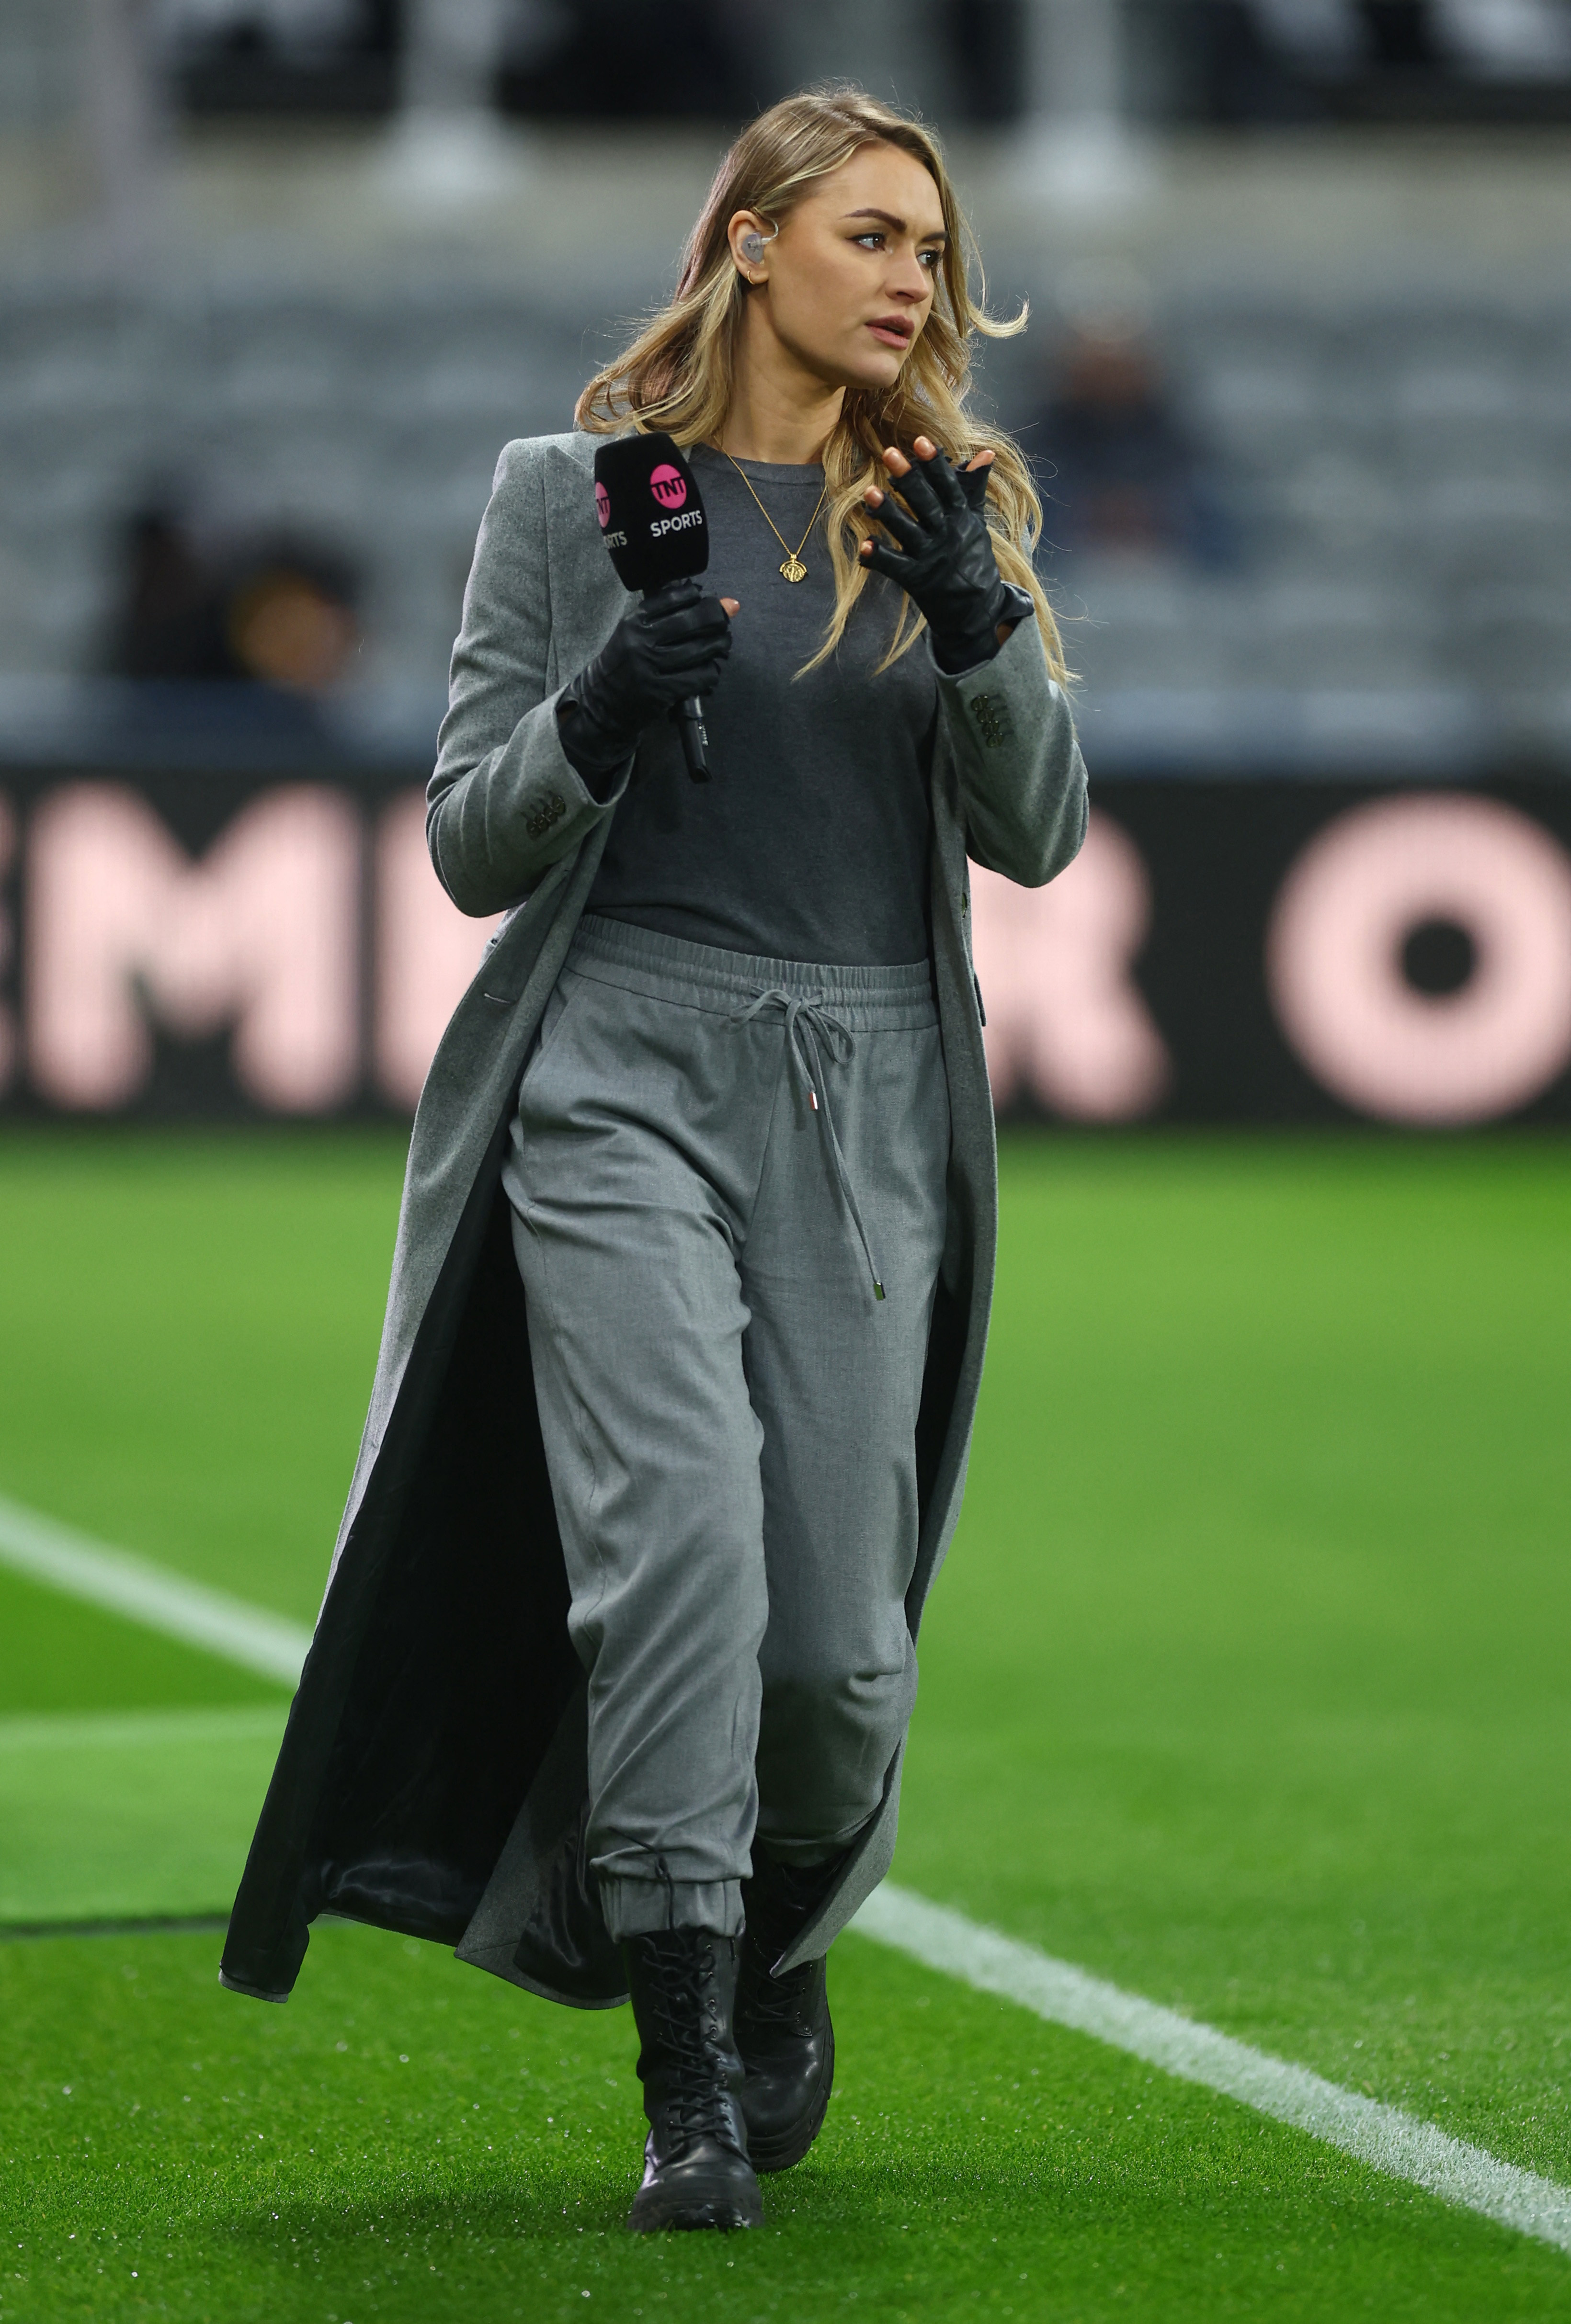 TNT Sports-Moderatorin Laura Woods steht vor einem Champions-League-Spiel am Spielfeldrand